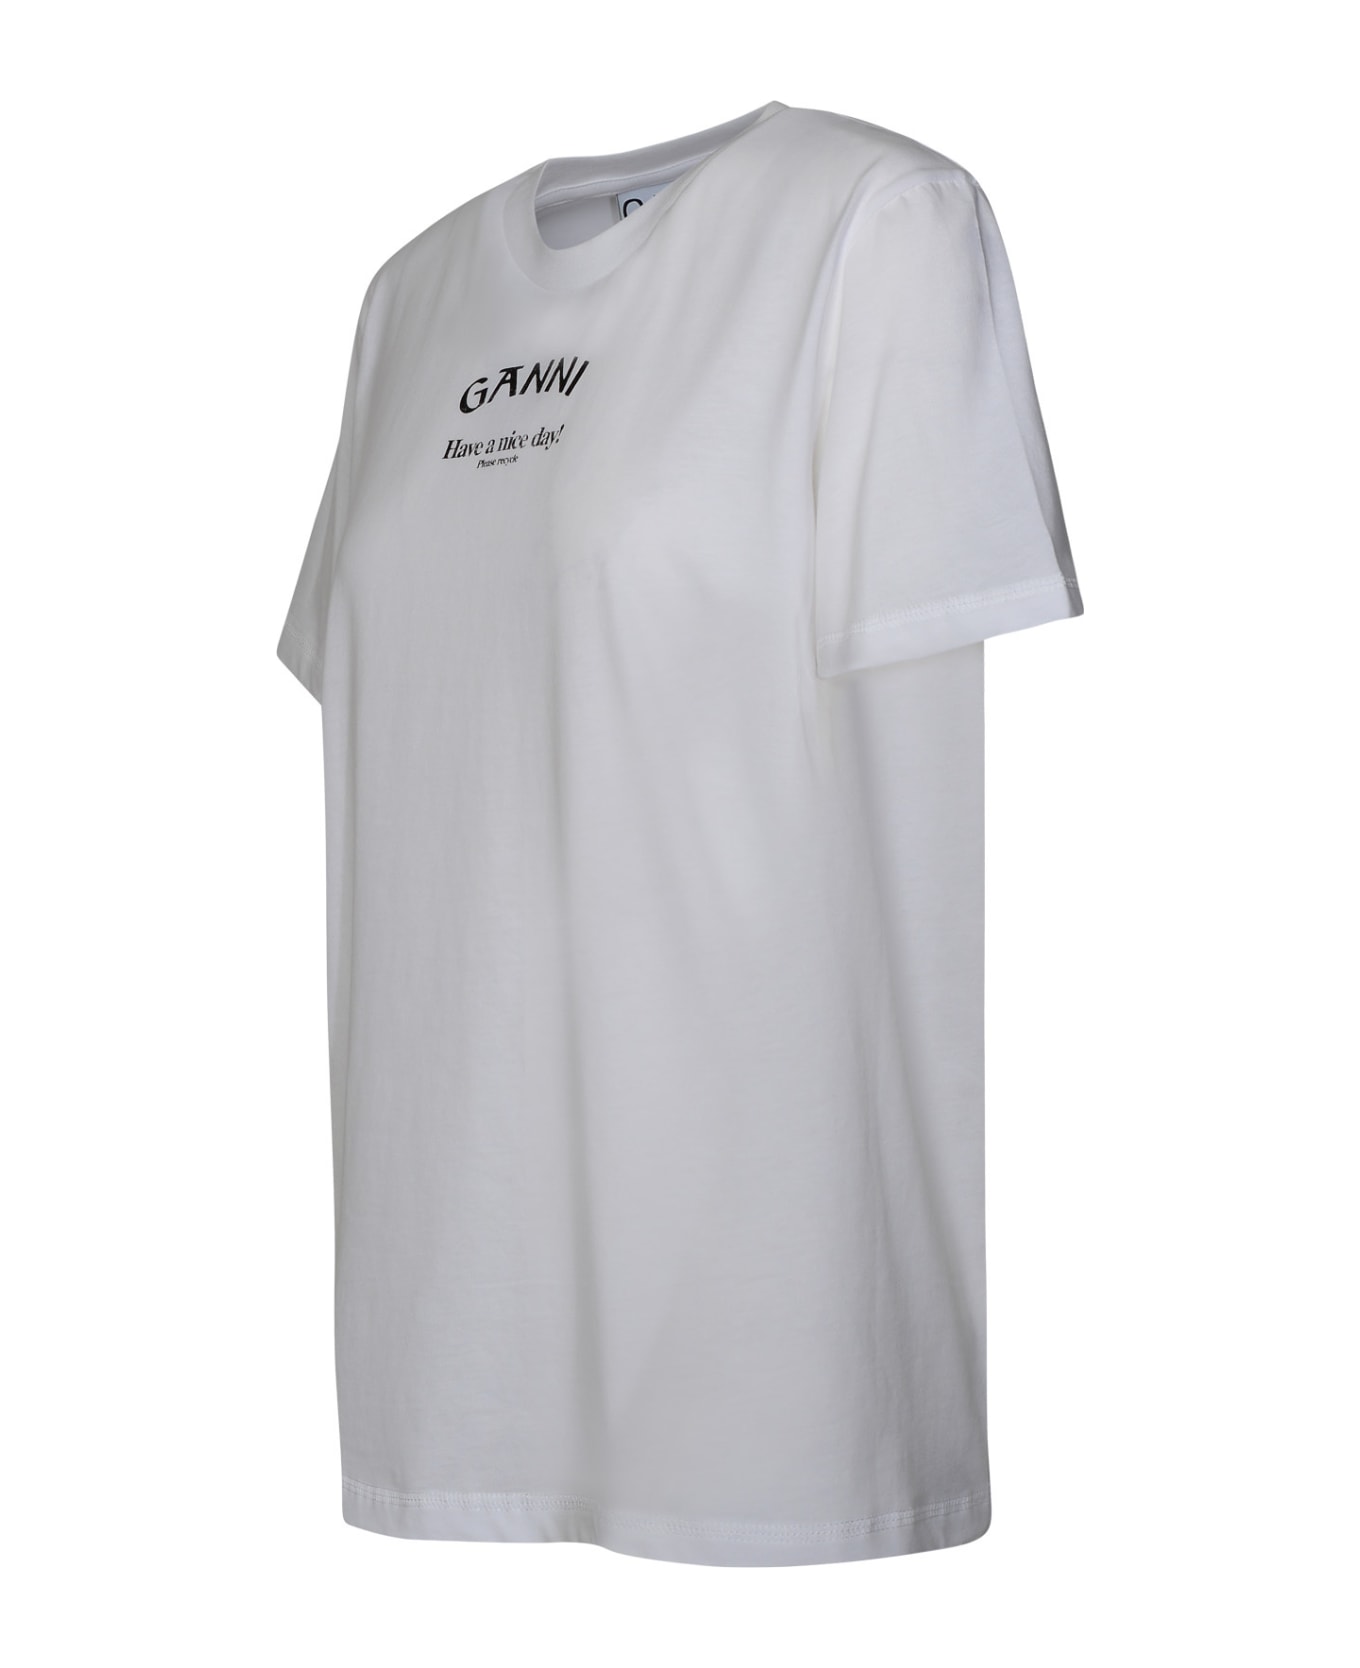 Ganni 'ganni' White Cotton T-shirt - White